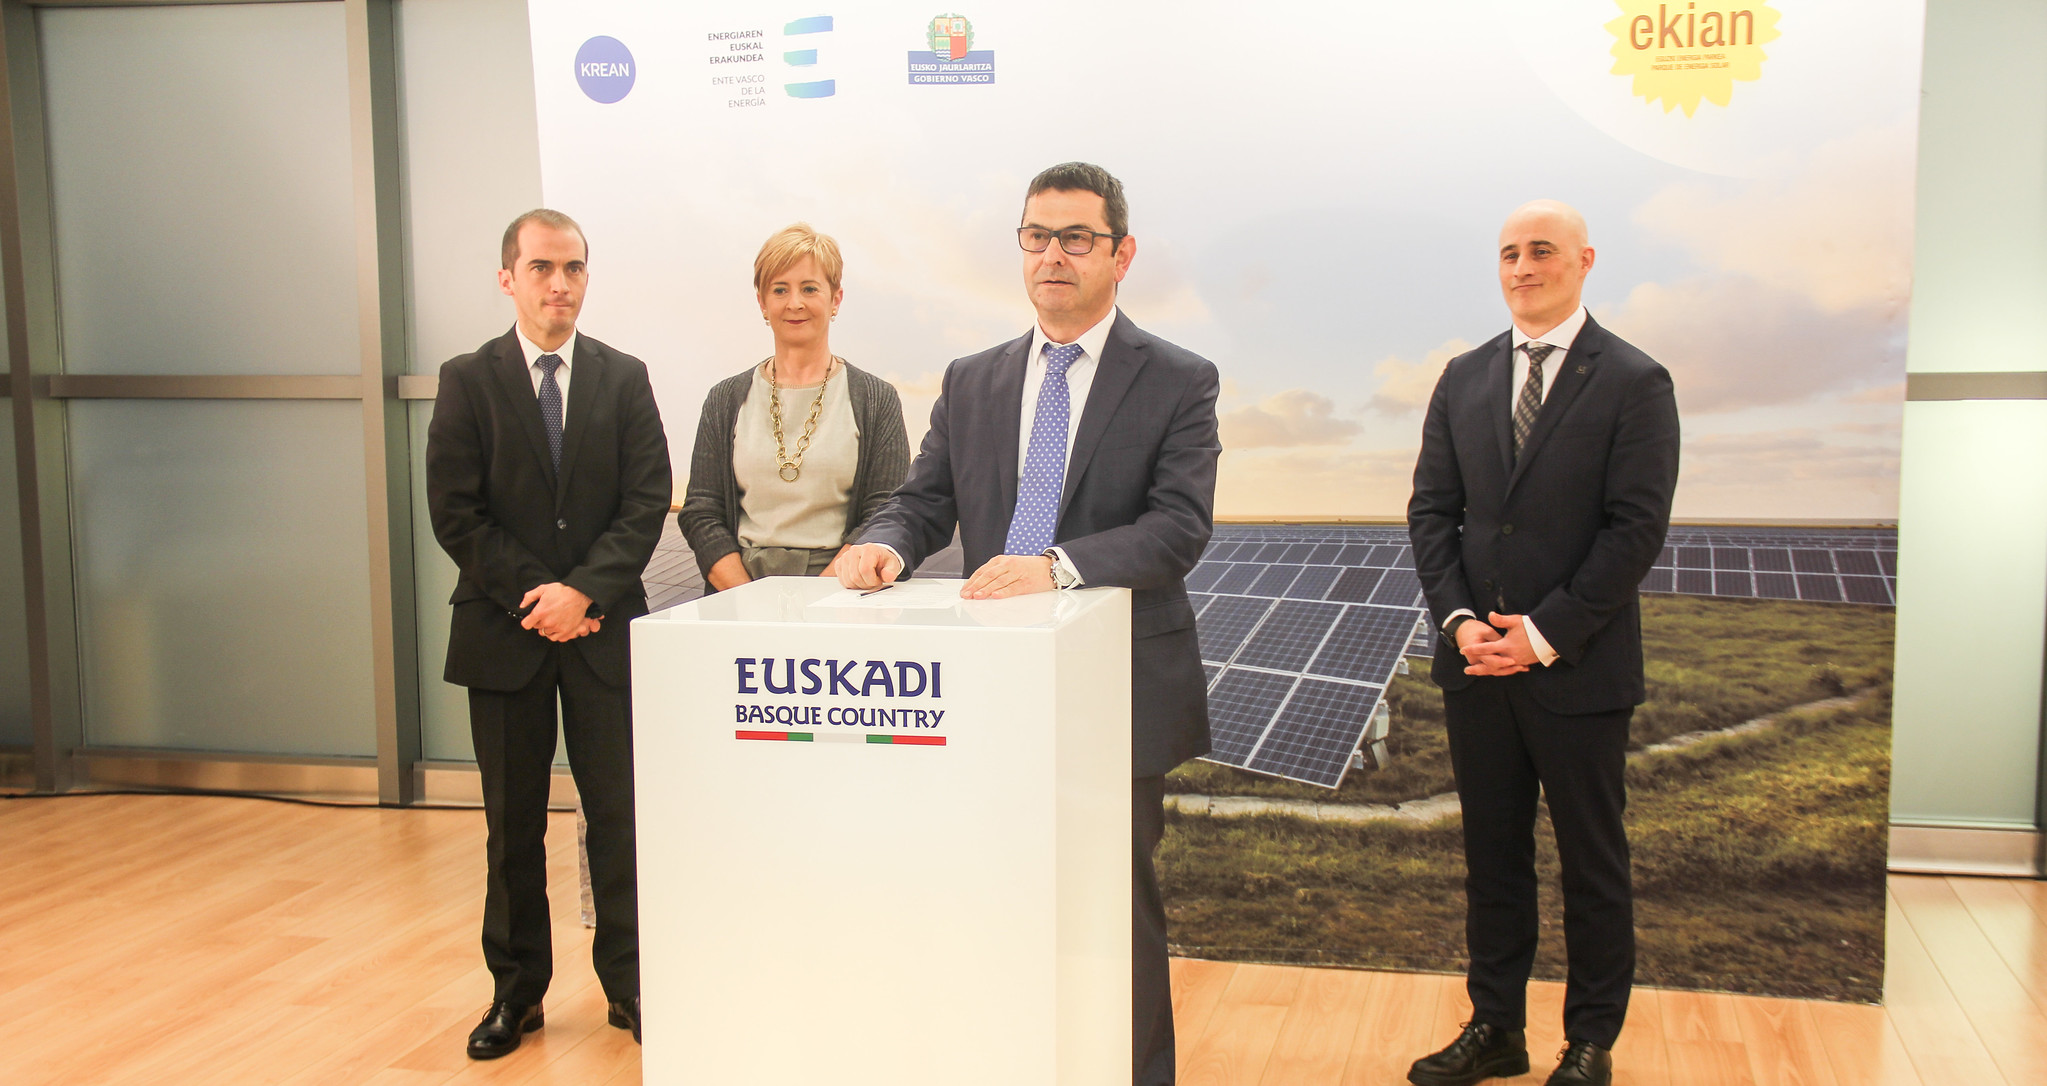 KREAN y EVE presentan EKIAN, el mayor parque de energía solar de Euskadi